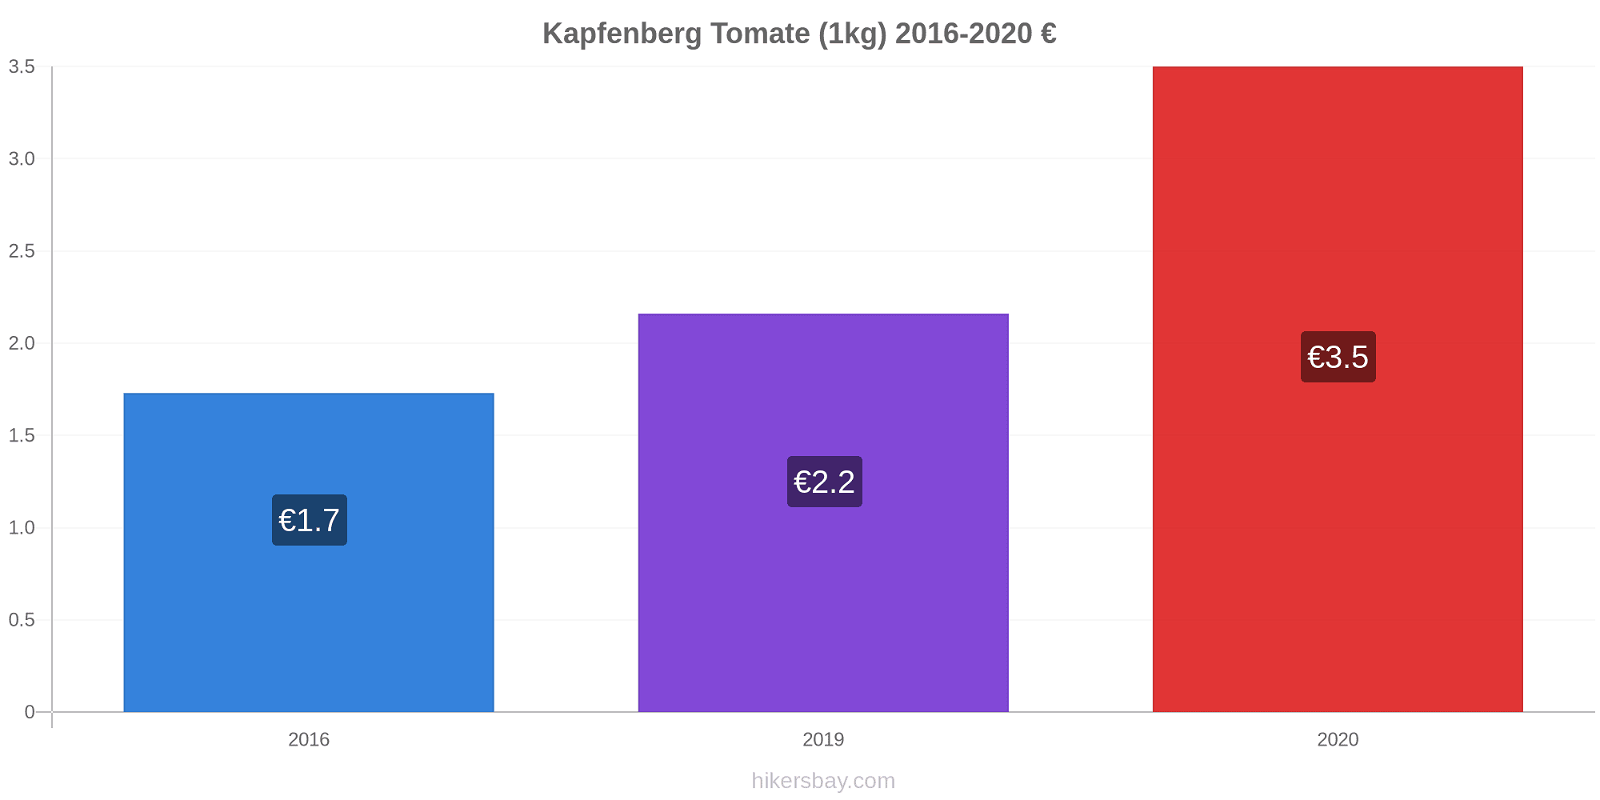 Kapfenberg cambios de precios Tomate (1kg) hikersbay.com